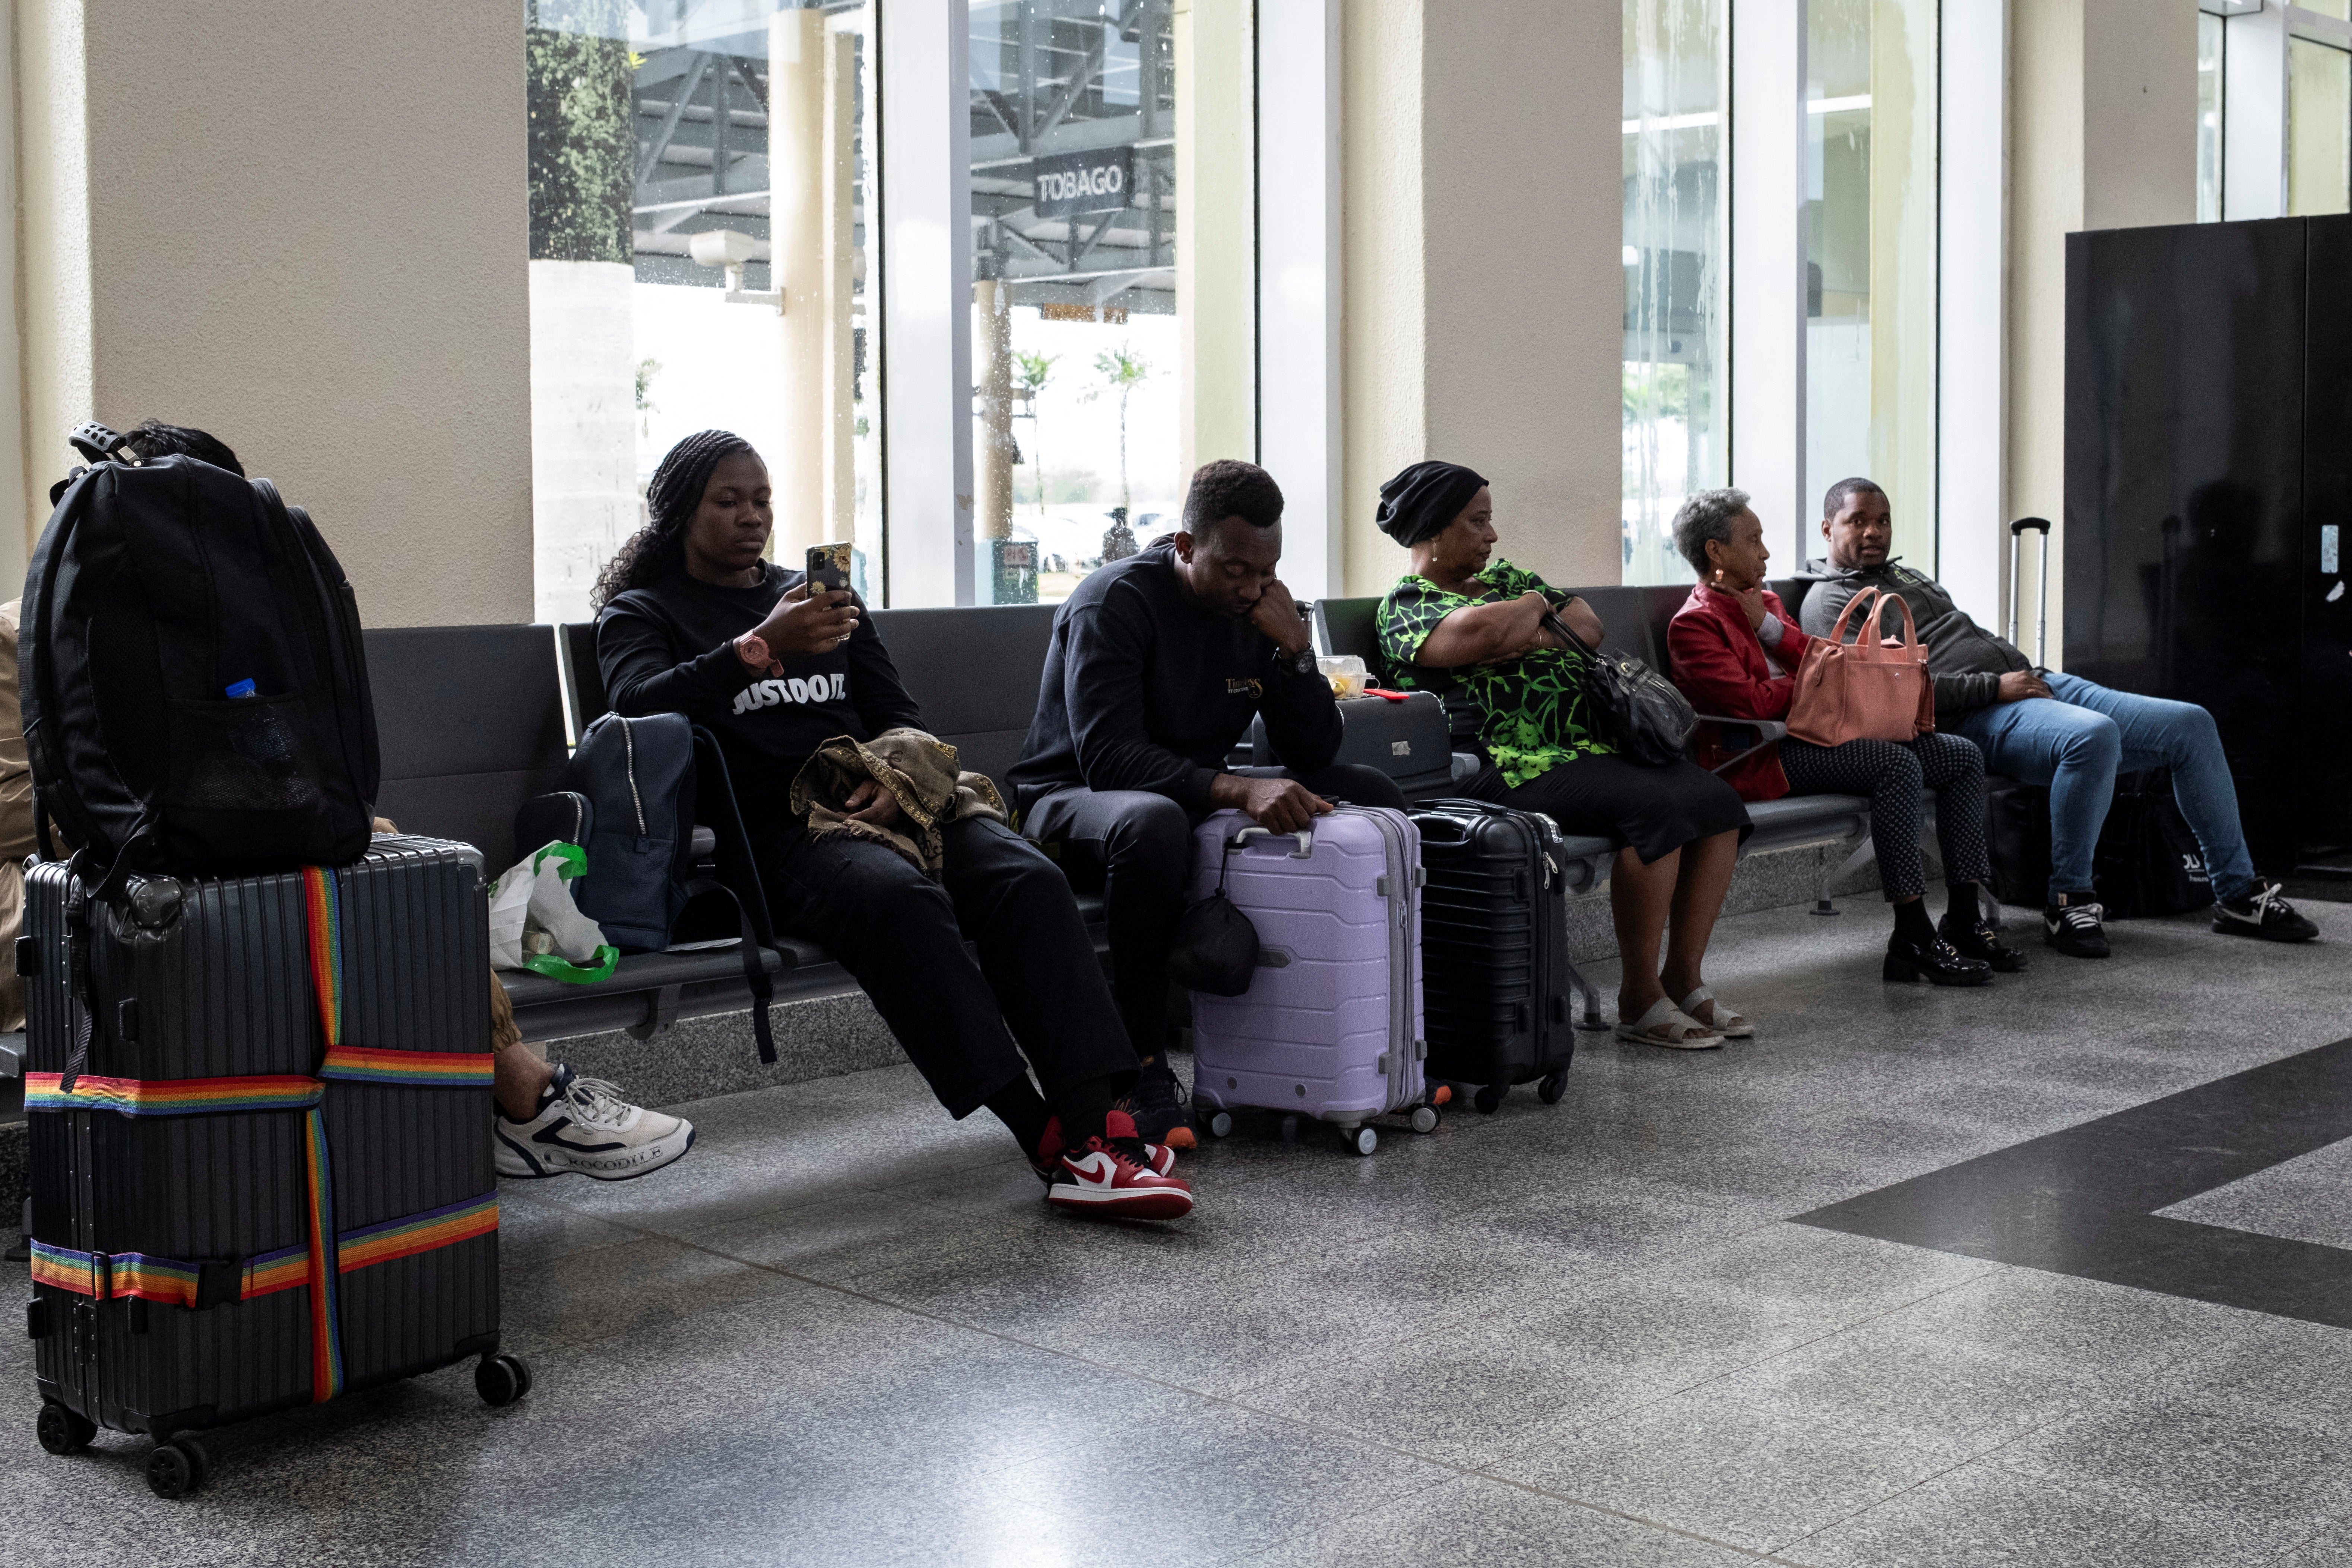 Reisende warten am Piarco International Airport, da Flüge aufgrund des Hurrikans Beryl verspätet waren und annulliert wurden